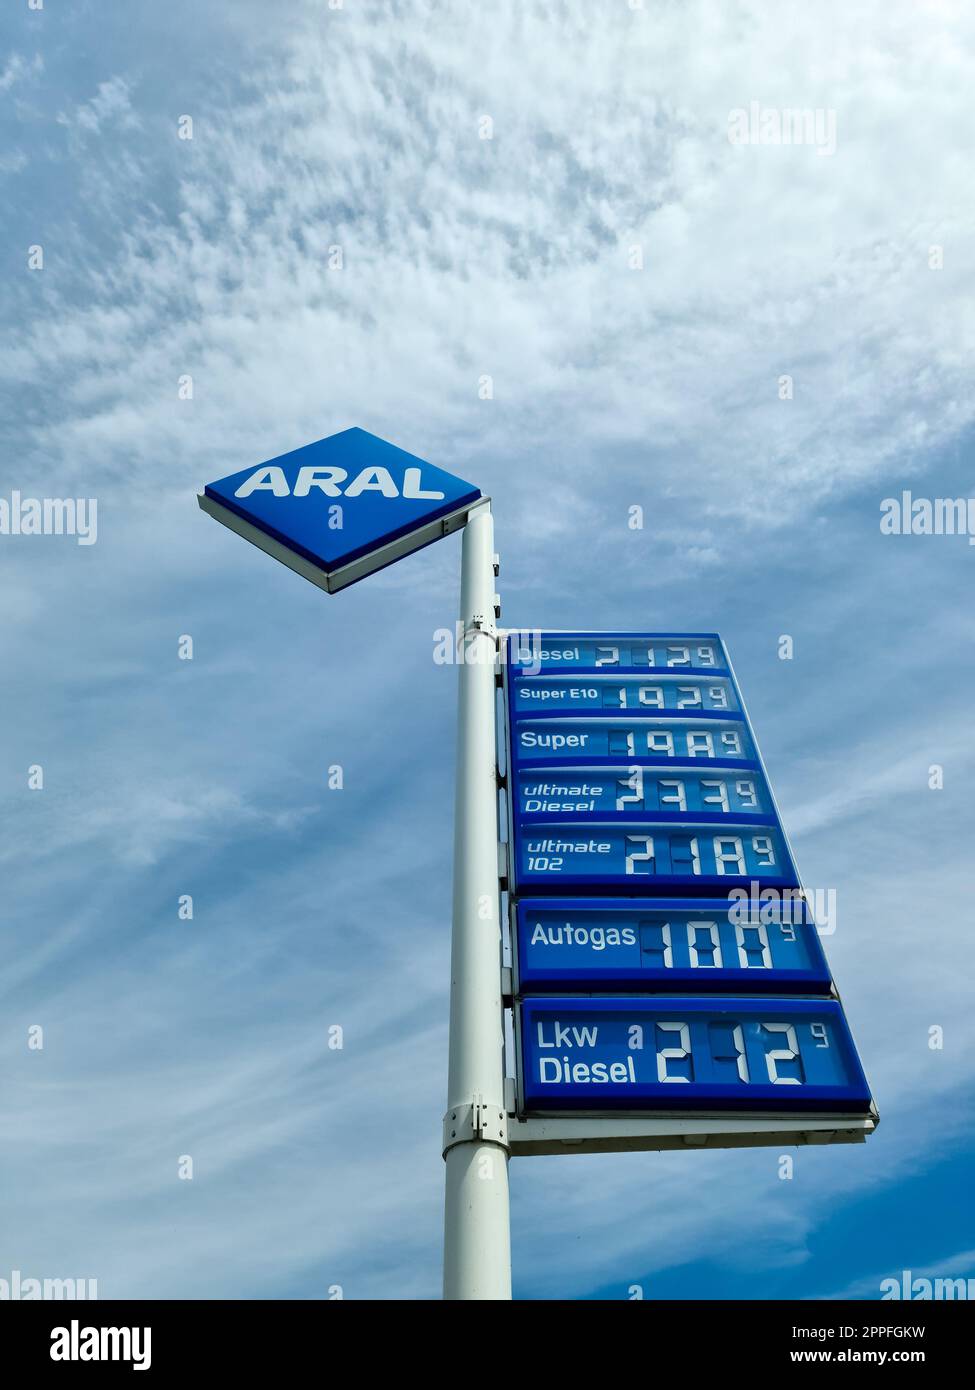 Kiel, Germania - 01.luglio 2022: Logo e prezzi del carburante di ARAL in Germania. Aral è un marchio di carburanti per automobili e stazioni di servizio. Foto Stock